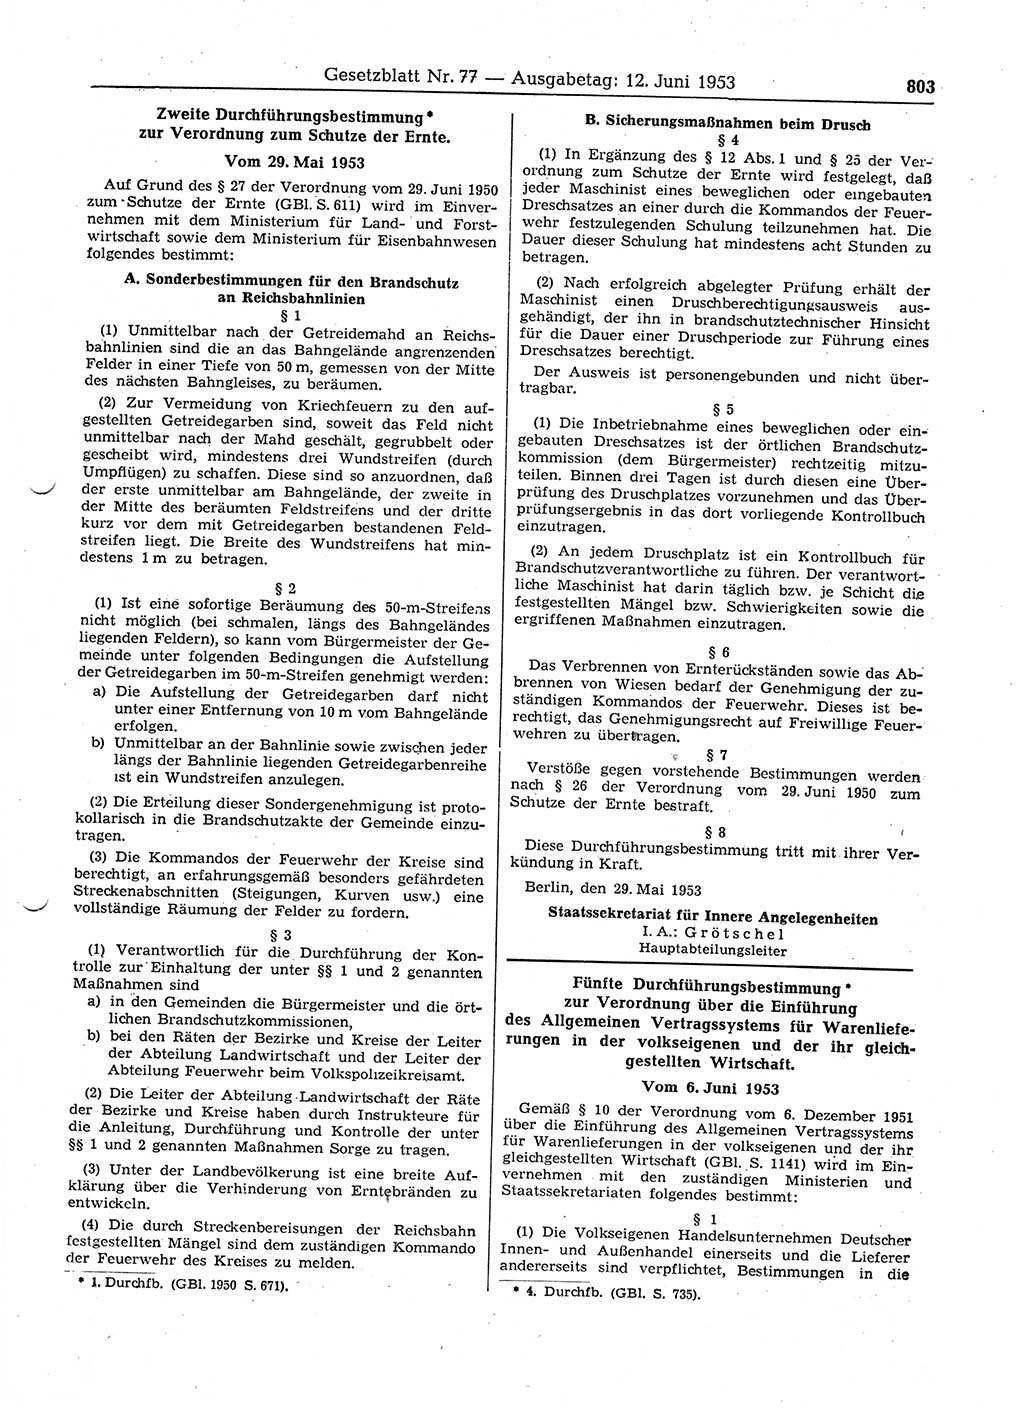 Gesetzblatt (GBl.) der Deutschen Demokratischen Republik (DDR) 1953, Seite 803 (GBl. DDR 1953, S. 803)